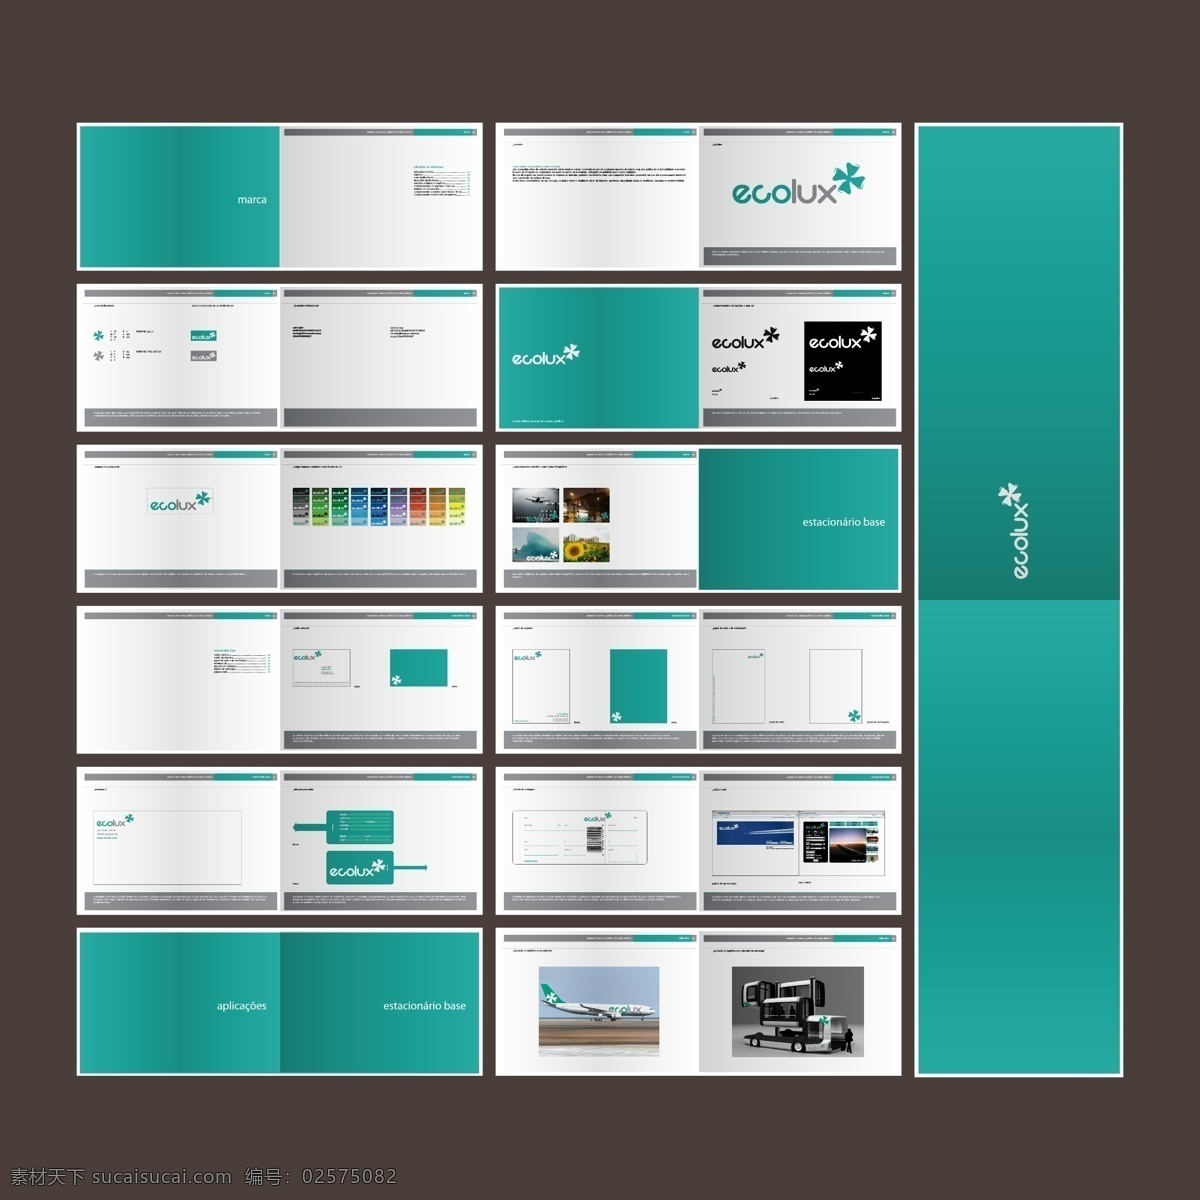 vi画册 画册 册子 折页 排版 板式 文化 宣传 艺术 视觉 vi 企业 logo 绿色 蓝色 标准色 环境 广告 画册设计